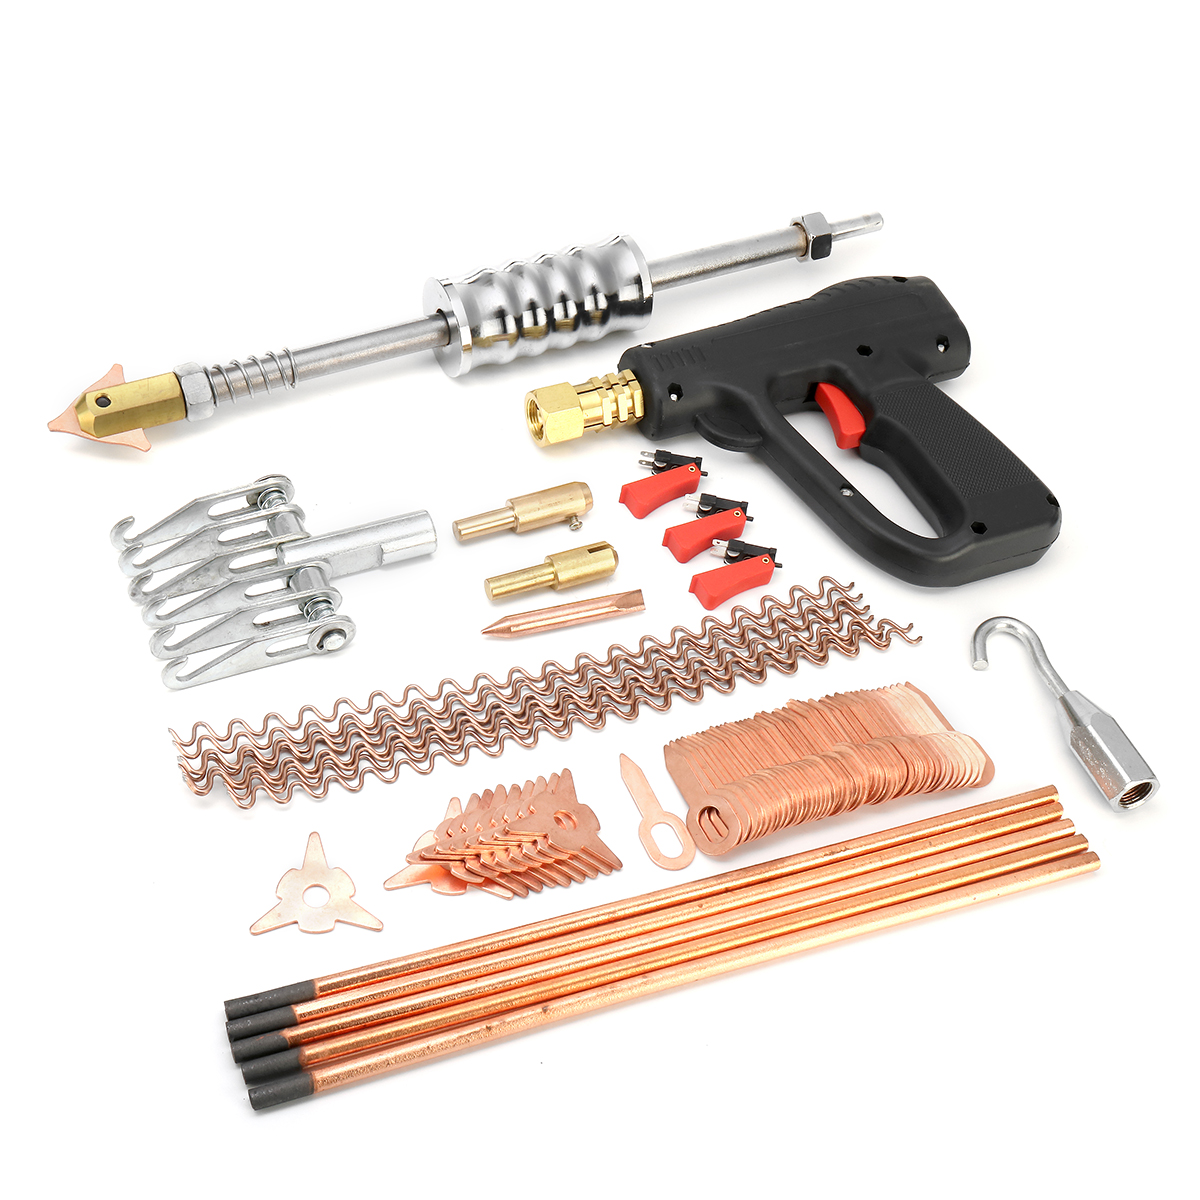 86Pcs-Dent-Puller-Kit-Car-Body-Dent-Spot-Repair-Device-Welder-Stud-Weld-Welding-Tools-Kit-1419058-8